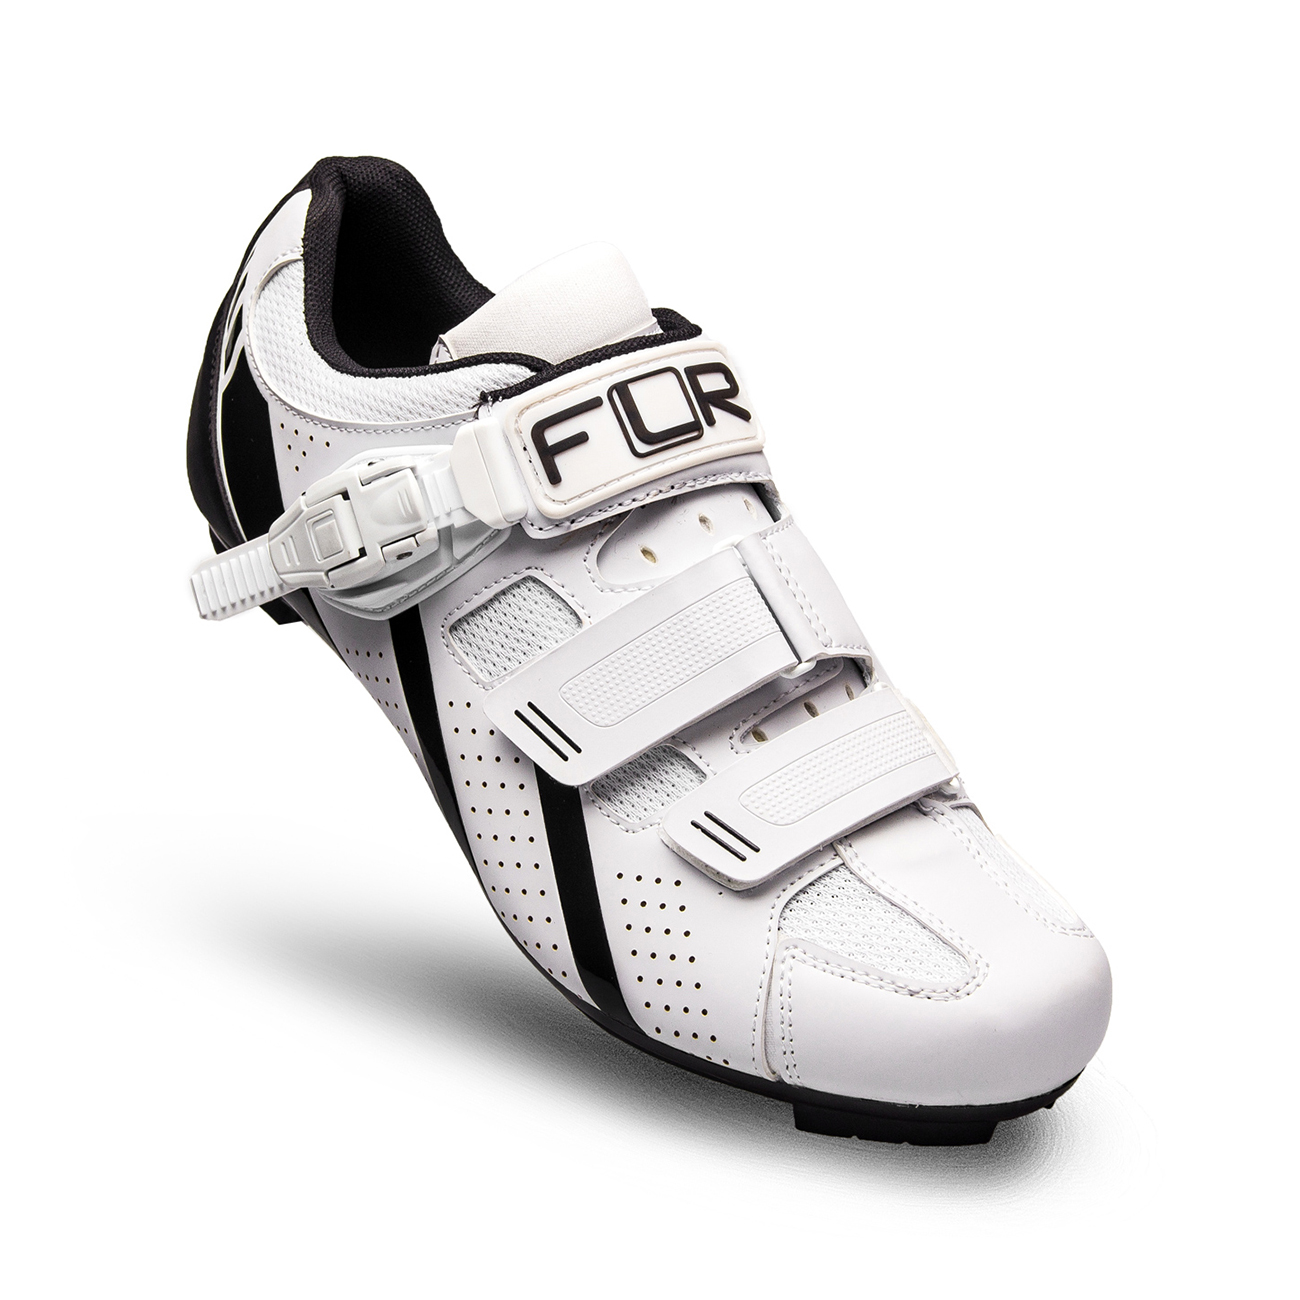 
                FLR Cyklistické tretry - F15 - černá/bílá 48
            